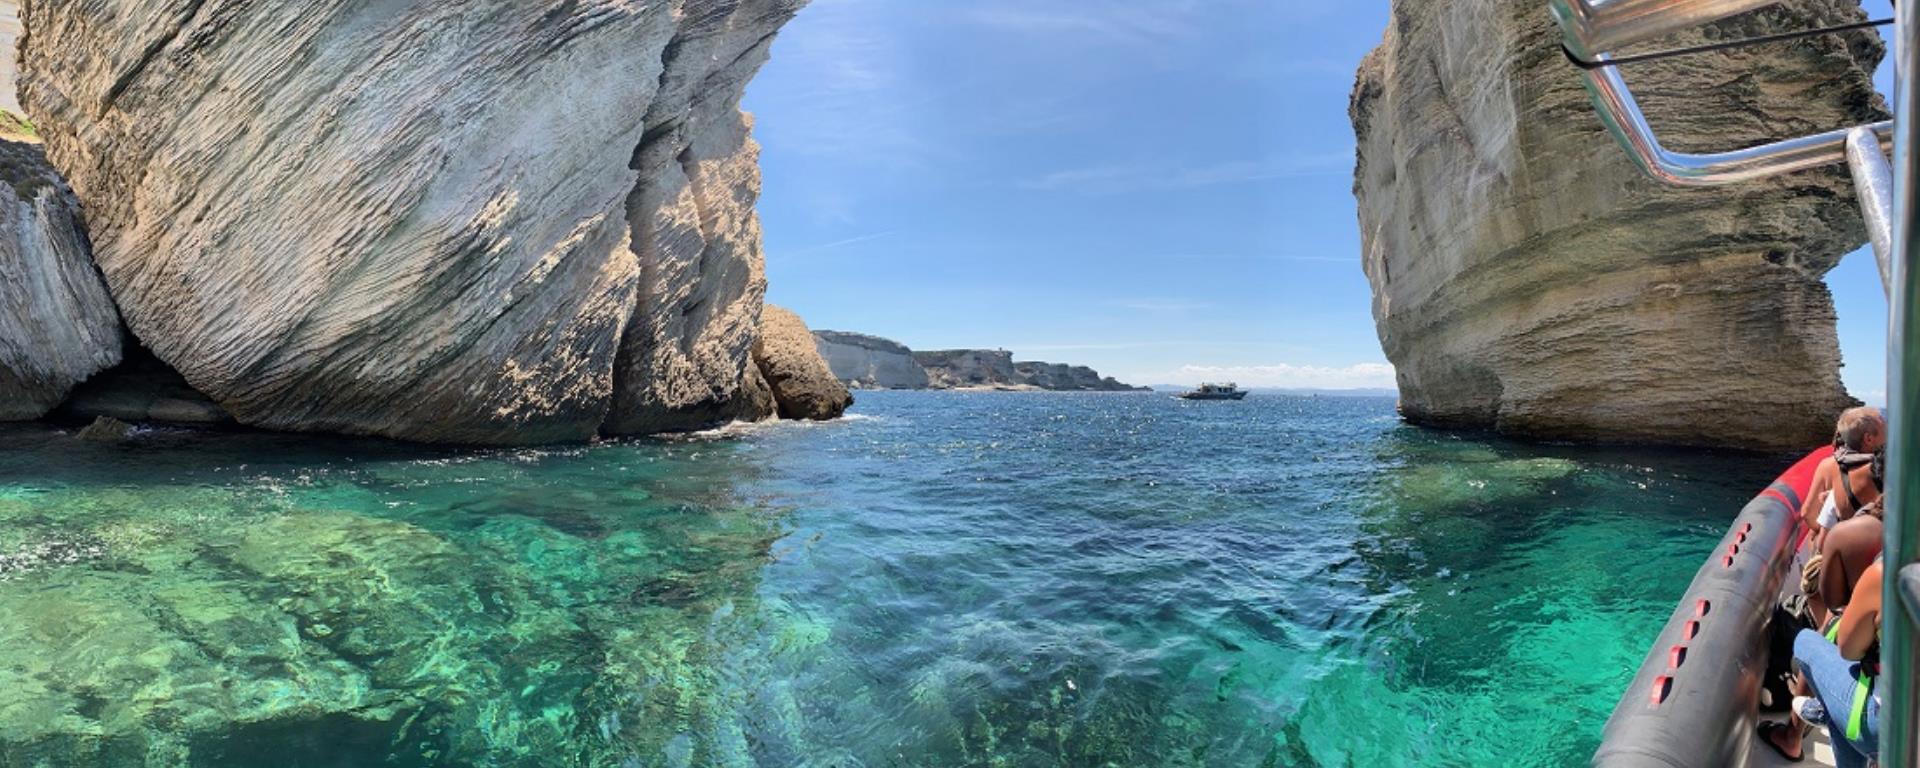 2021- corsica marittima - falaises  Corsica Marittima